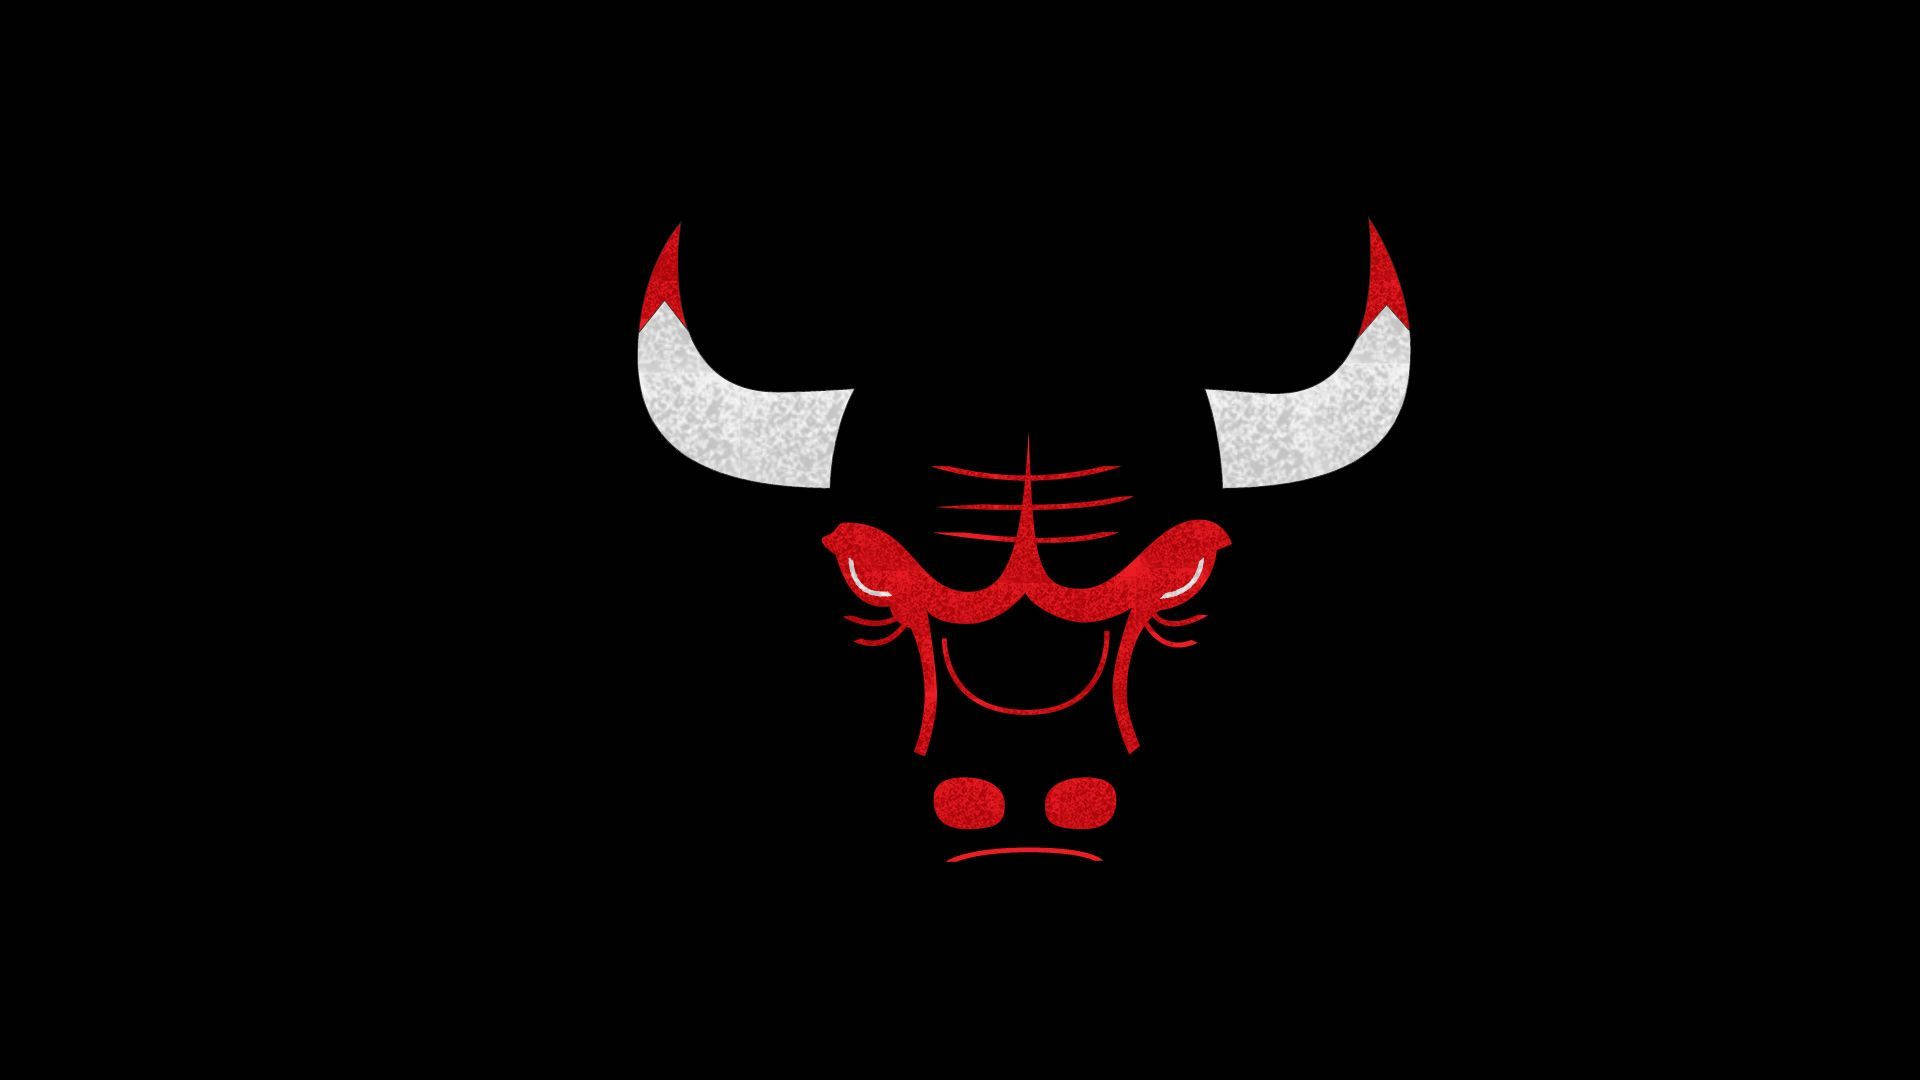 Chicago Bulls Silhouette Vector Art Logo Background